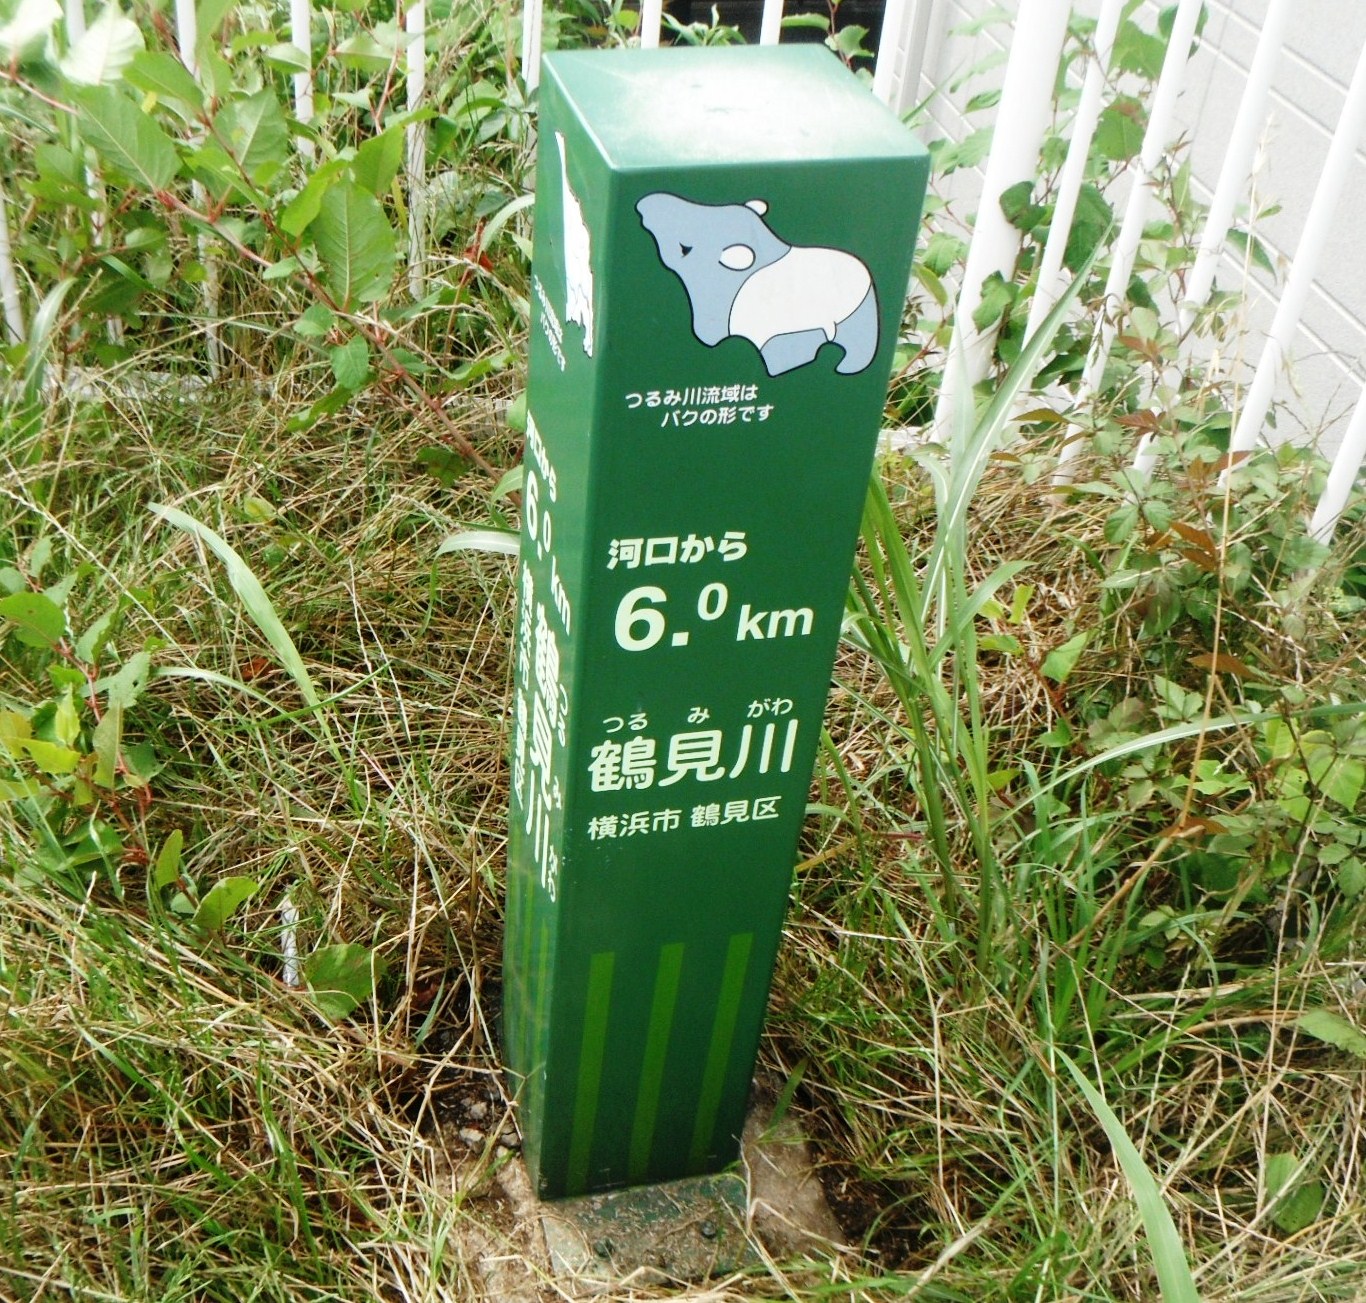 鶴見川の横浜市側に設置されている河川の距離標の写真